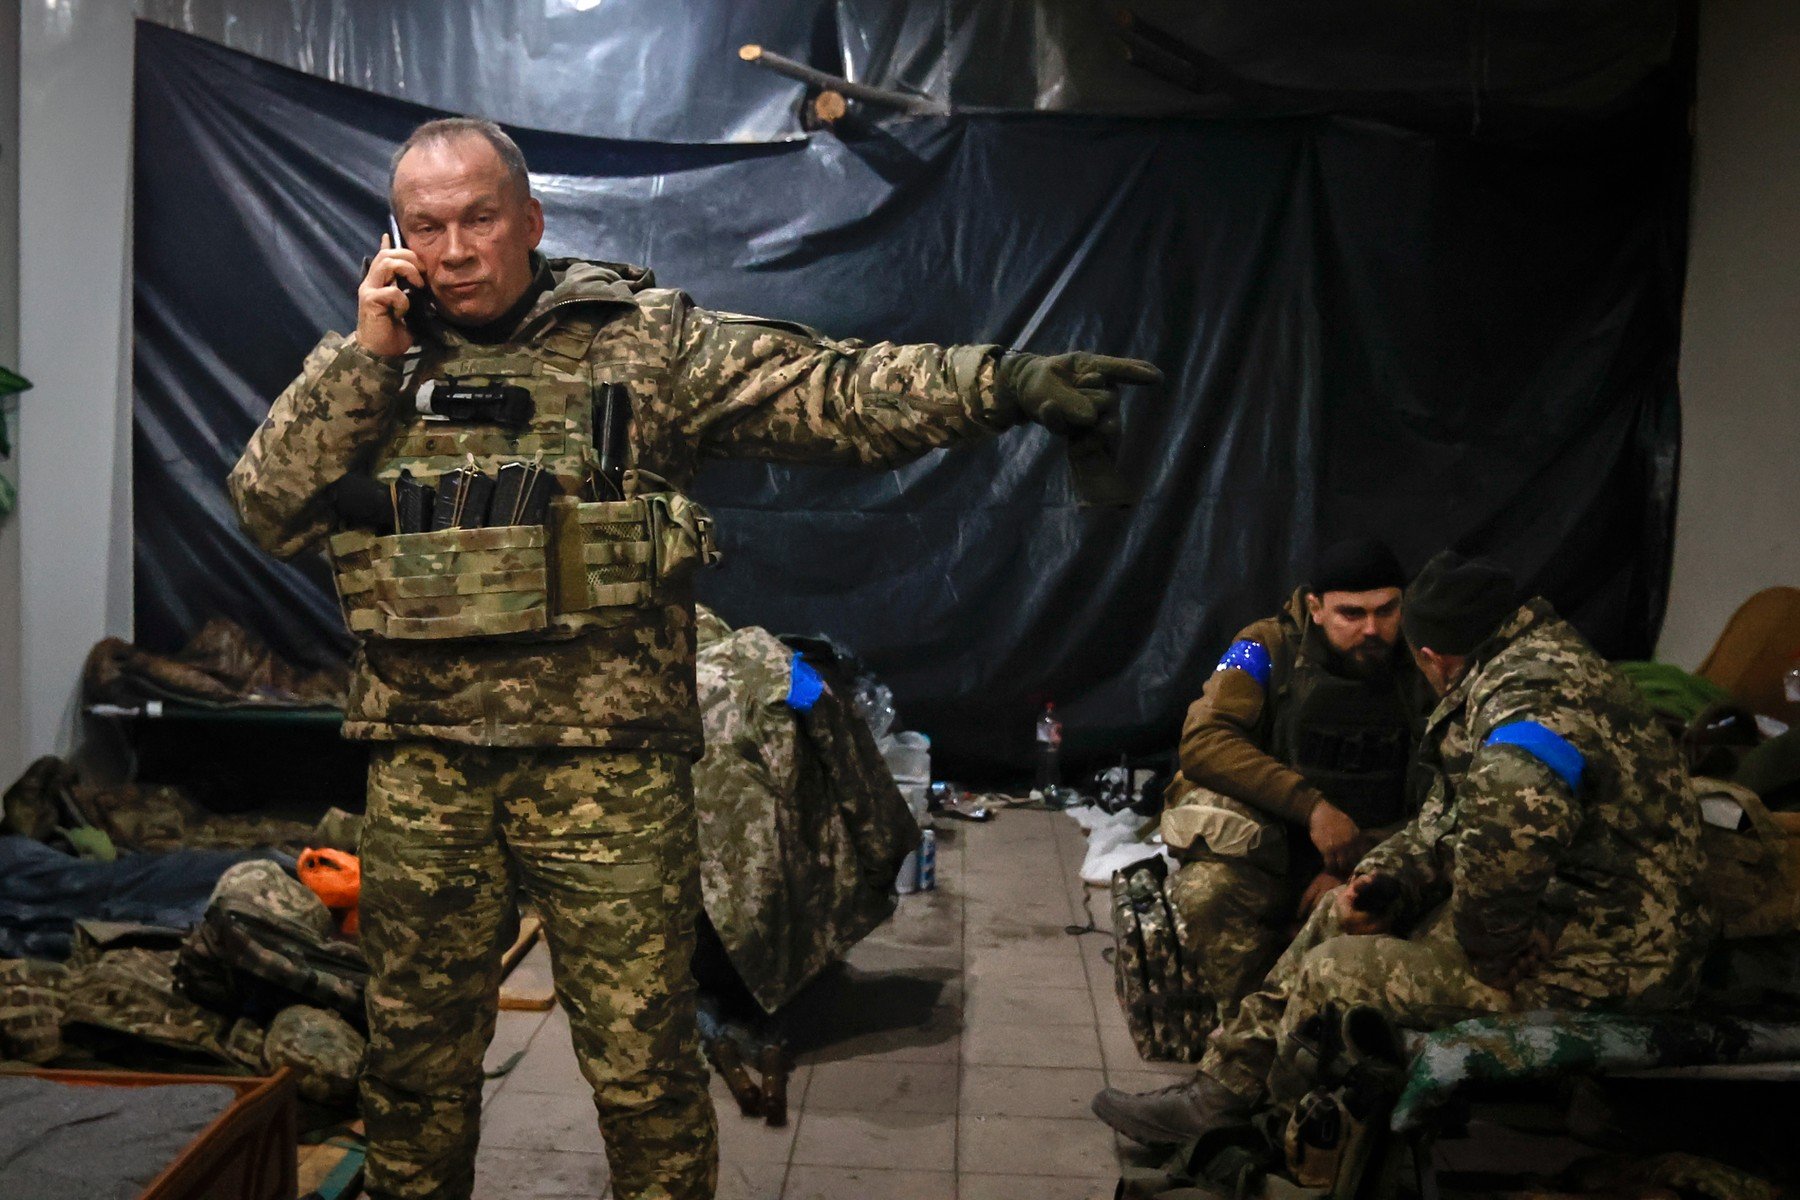  Armata rusă are superioritate în jurul Kupianskului, anunţă comandantul Forţelor Terestre ucrainene